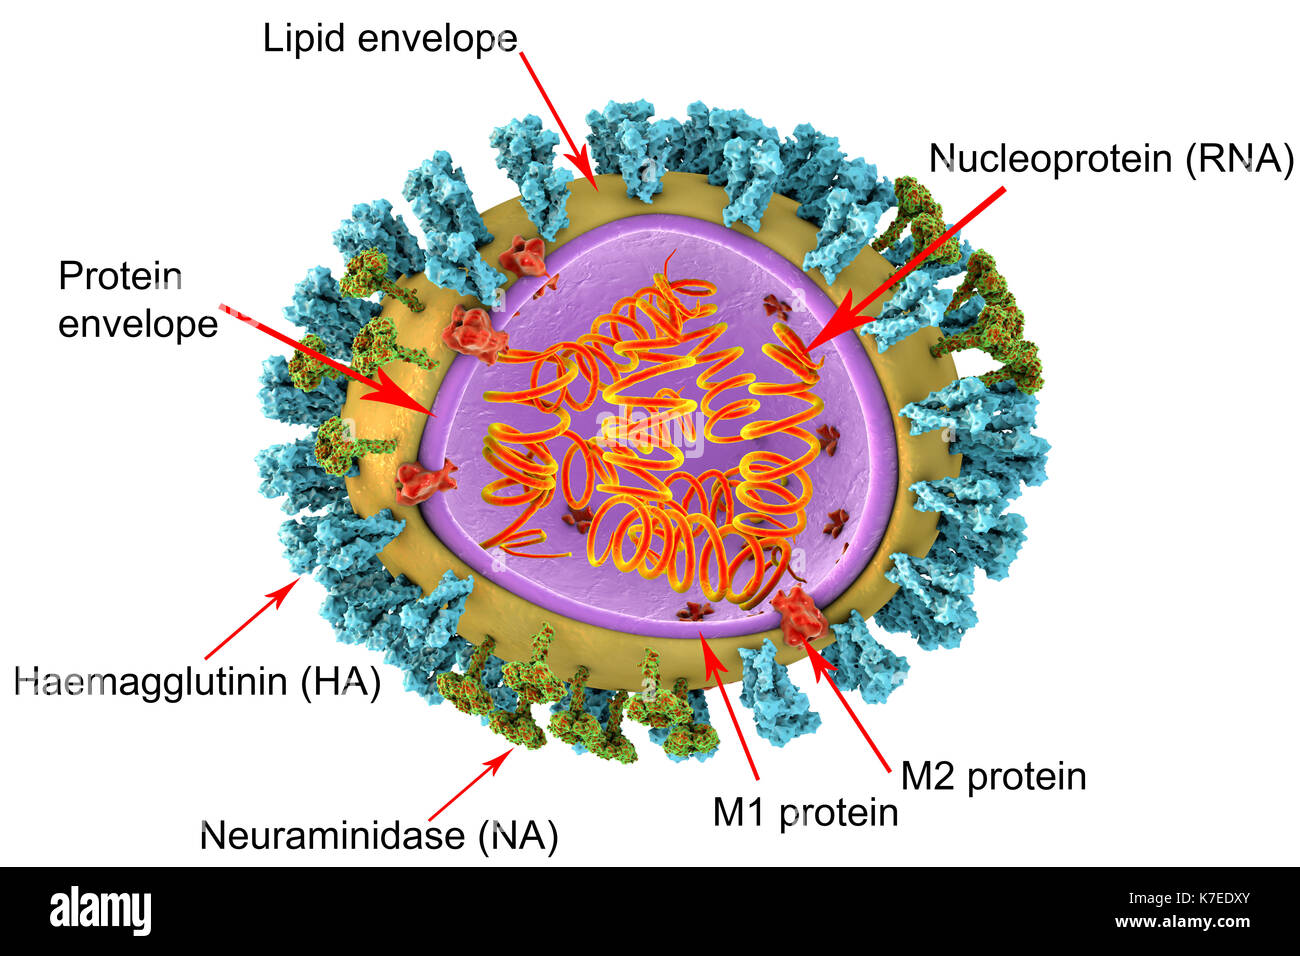 3D illustrazione di virus influenzali di struttura particellare. Il virus è costituito da un acido ribonucleico (RNA, bobine arancione) core, circondato da un nucleocapside (viola) e una busta di lipidi (giallo). Spanning capside e la busta sono M2 proteine (rosso), che agiscono come pompe di protoni. Nella busta sono due tipi di proteina spike, emoagglutinina (H, blu) e neuraminidasi (N, verde), che determinano il ceppo di virus. Foto Stock